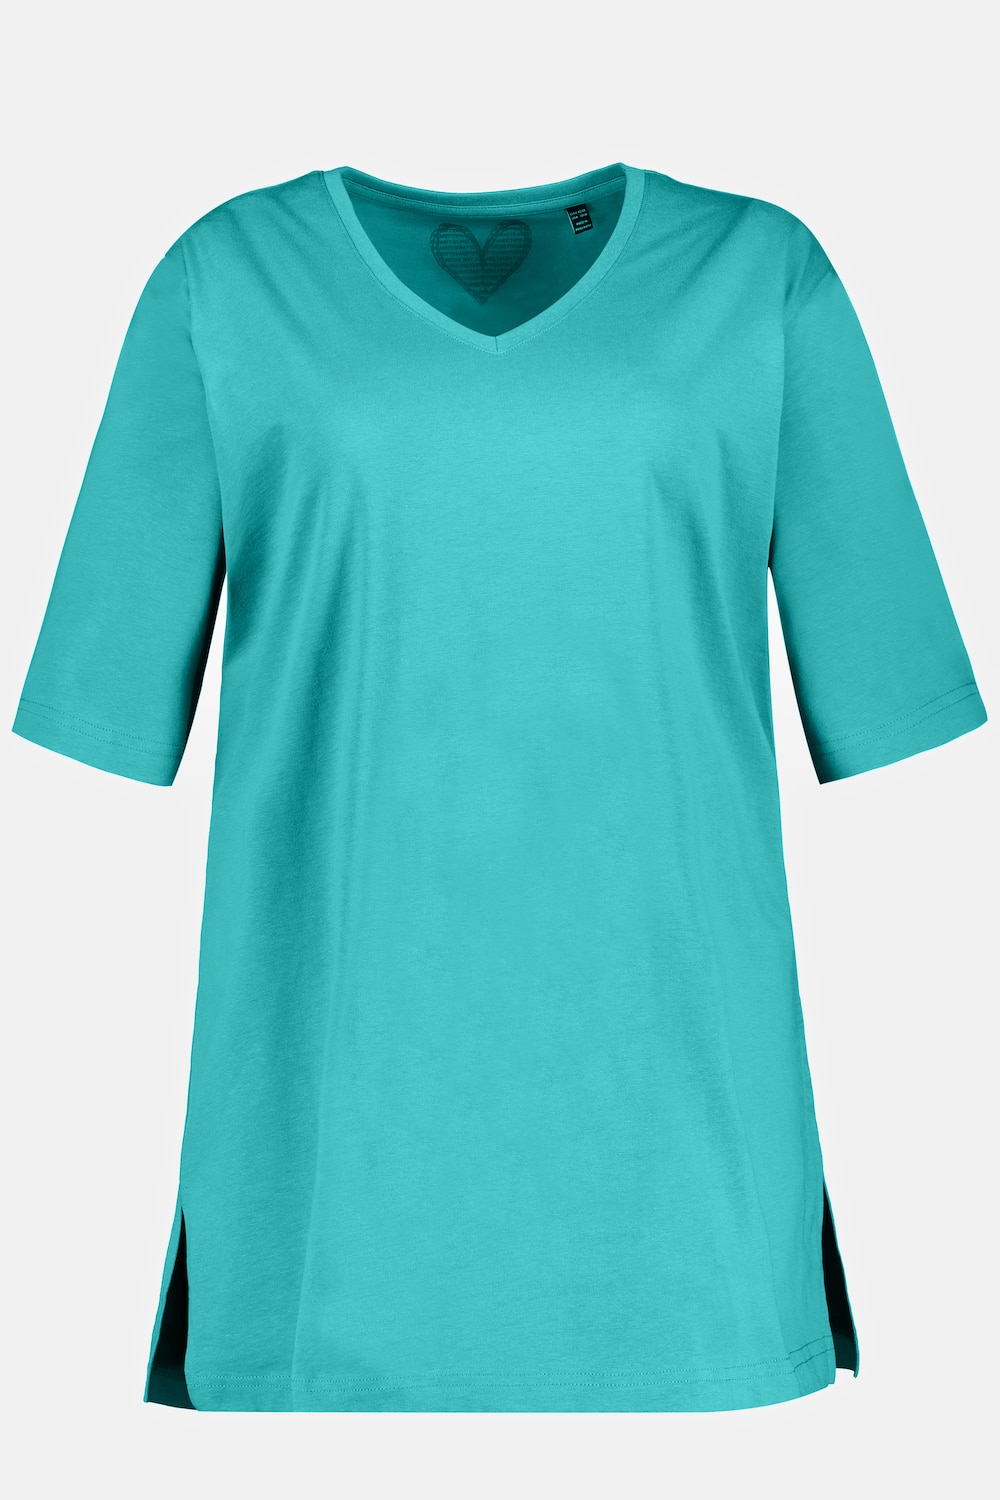 Grote Maten T-shirt, Dames, turquoise, Maat: 54/56, Ulla Popken